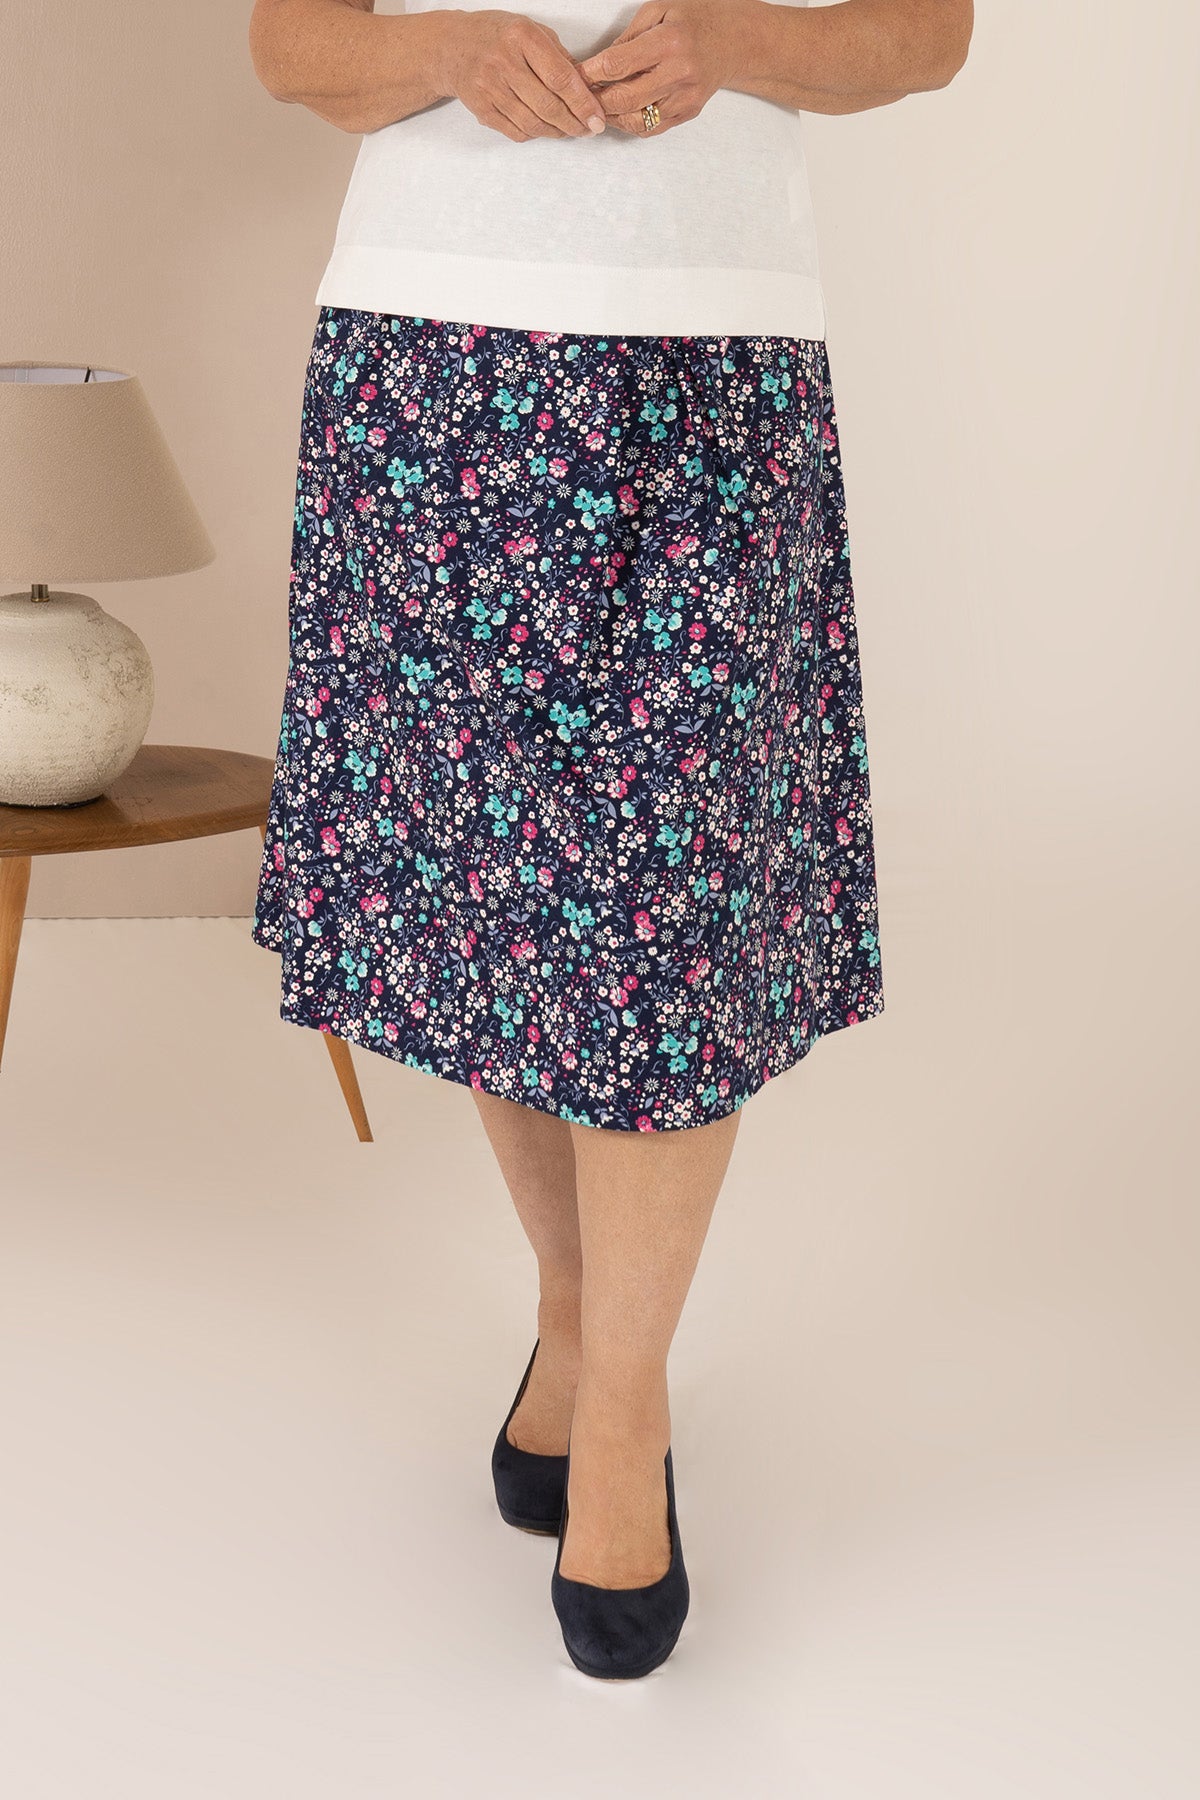 Milford Skirt